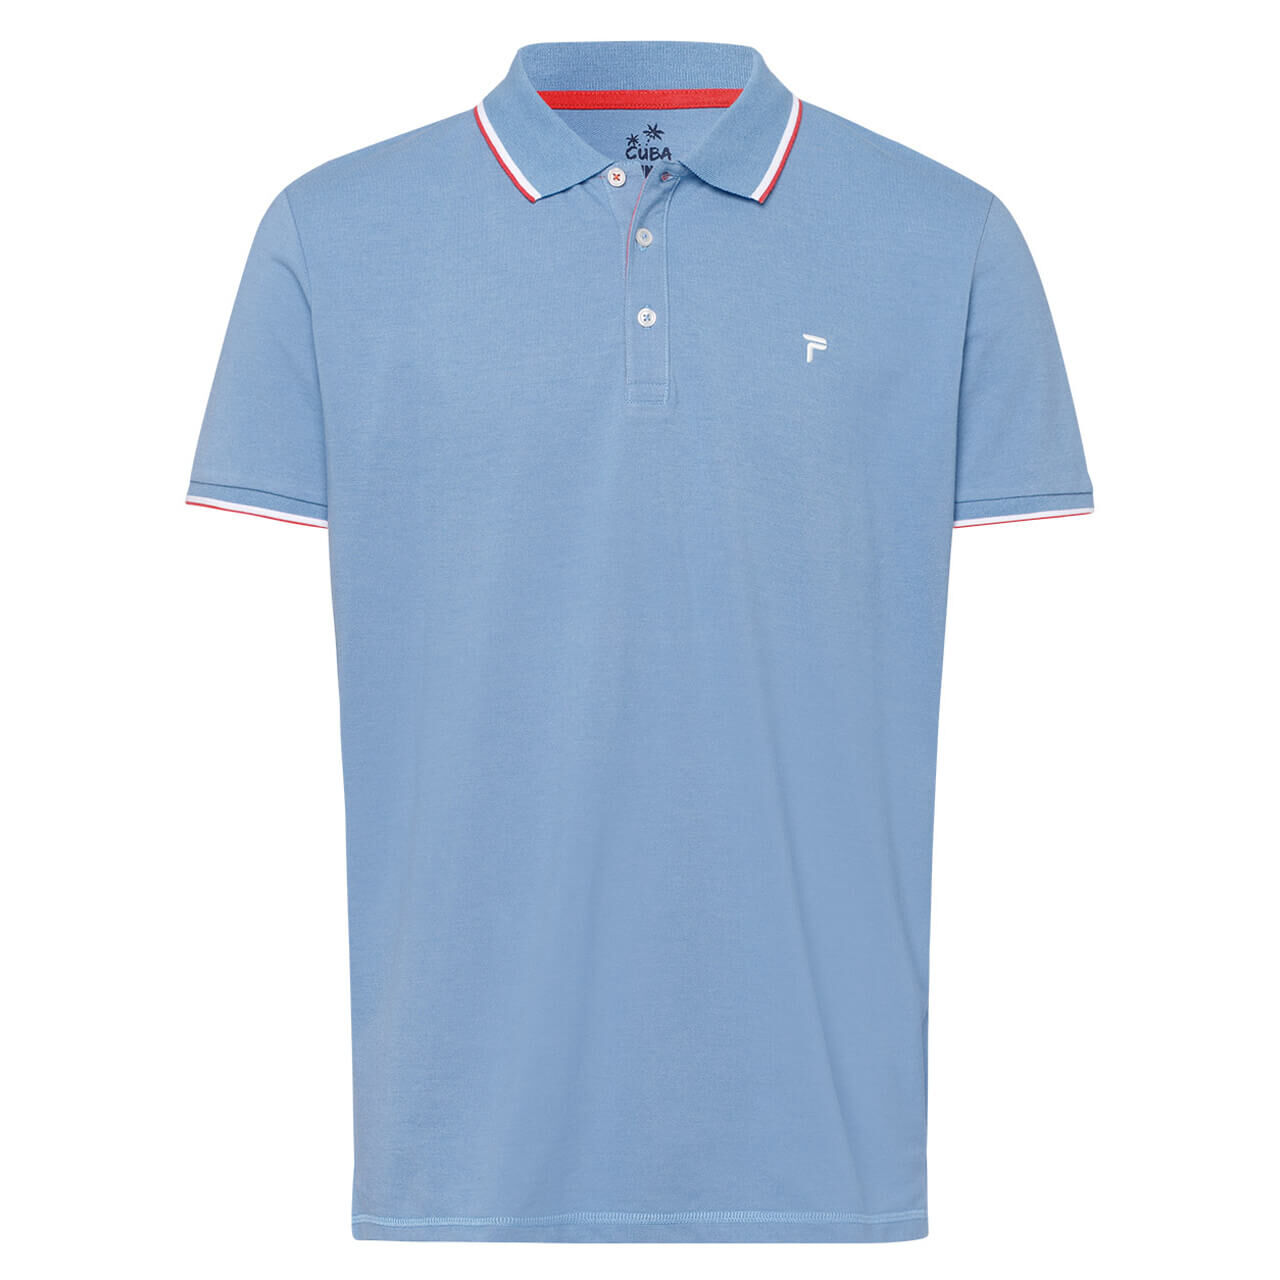 Pioneer Poloshirt für Herren in Blau meliert, FarbNr.: 6520